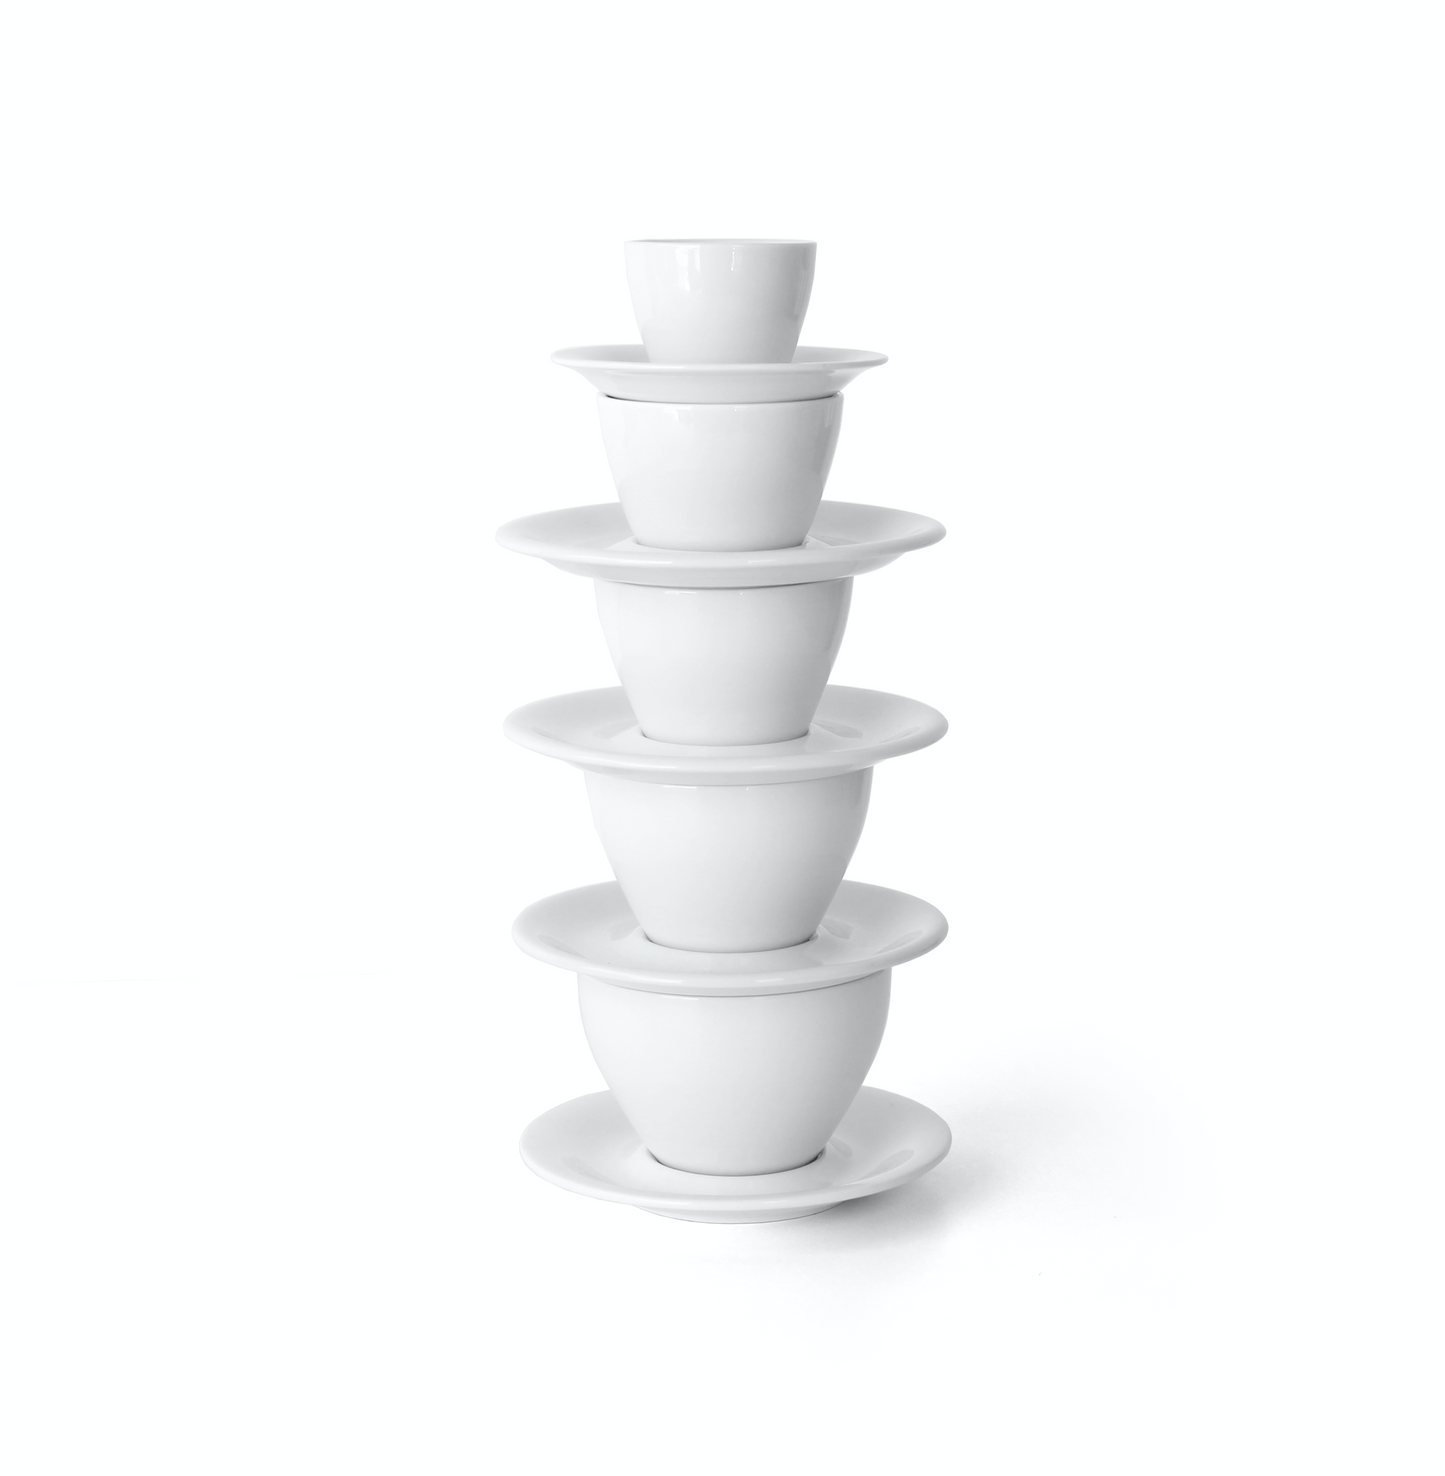 Meno Double Cappuccino Cup/Saucer